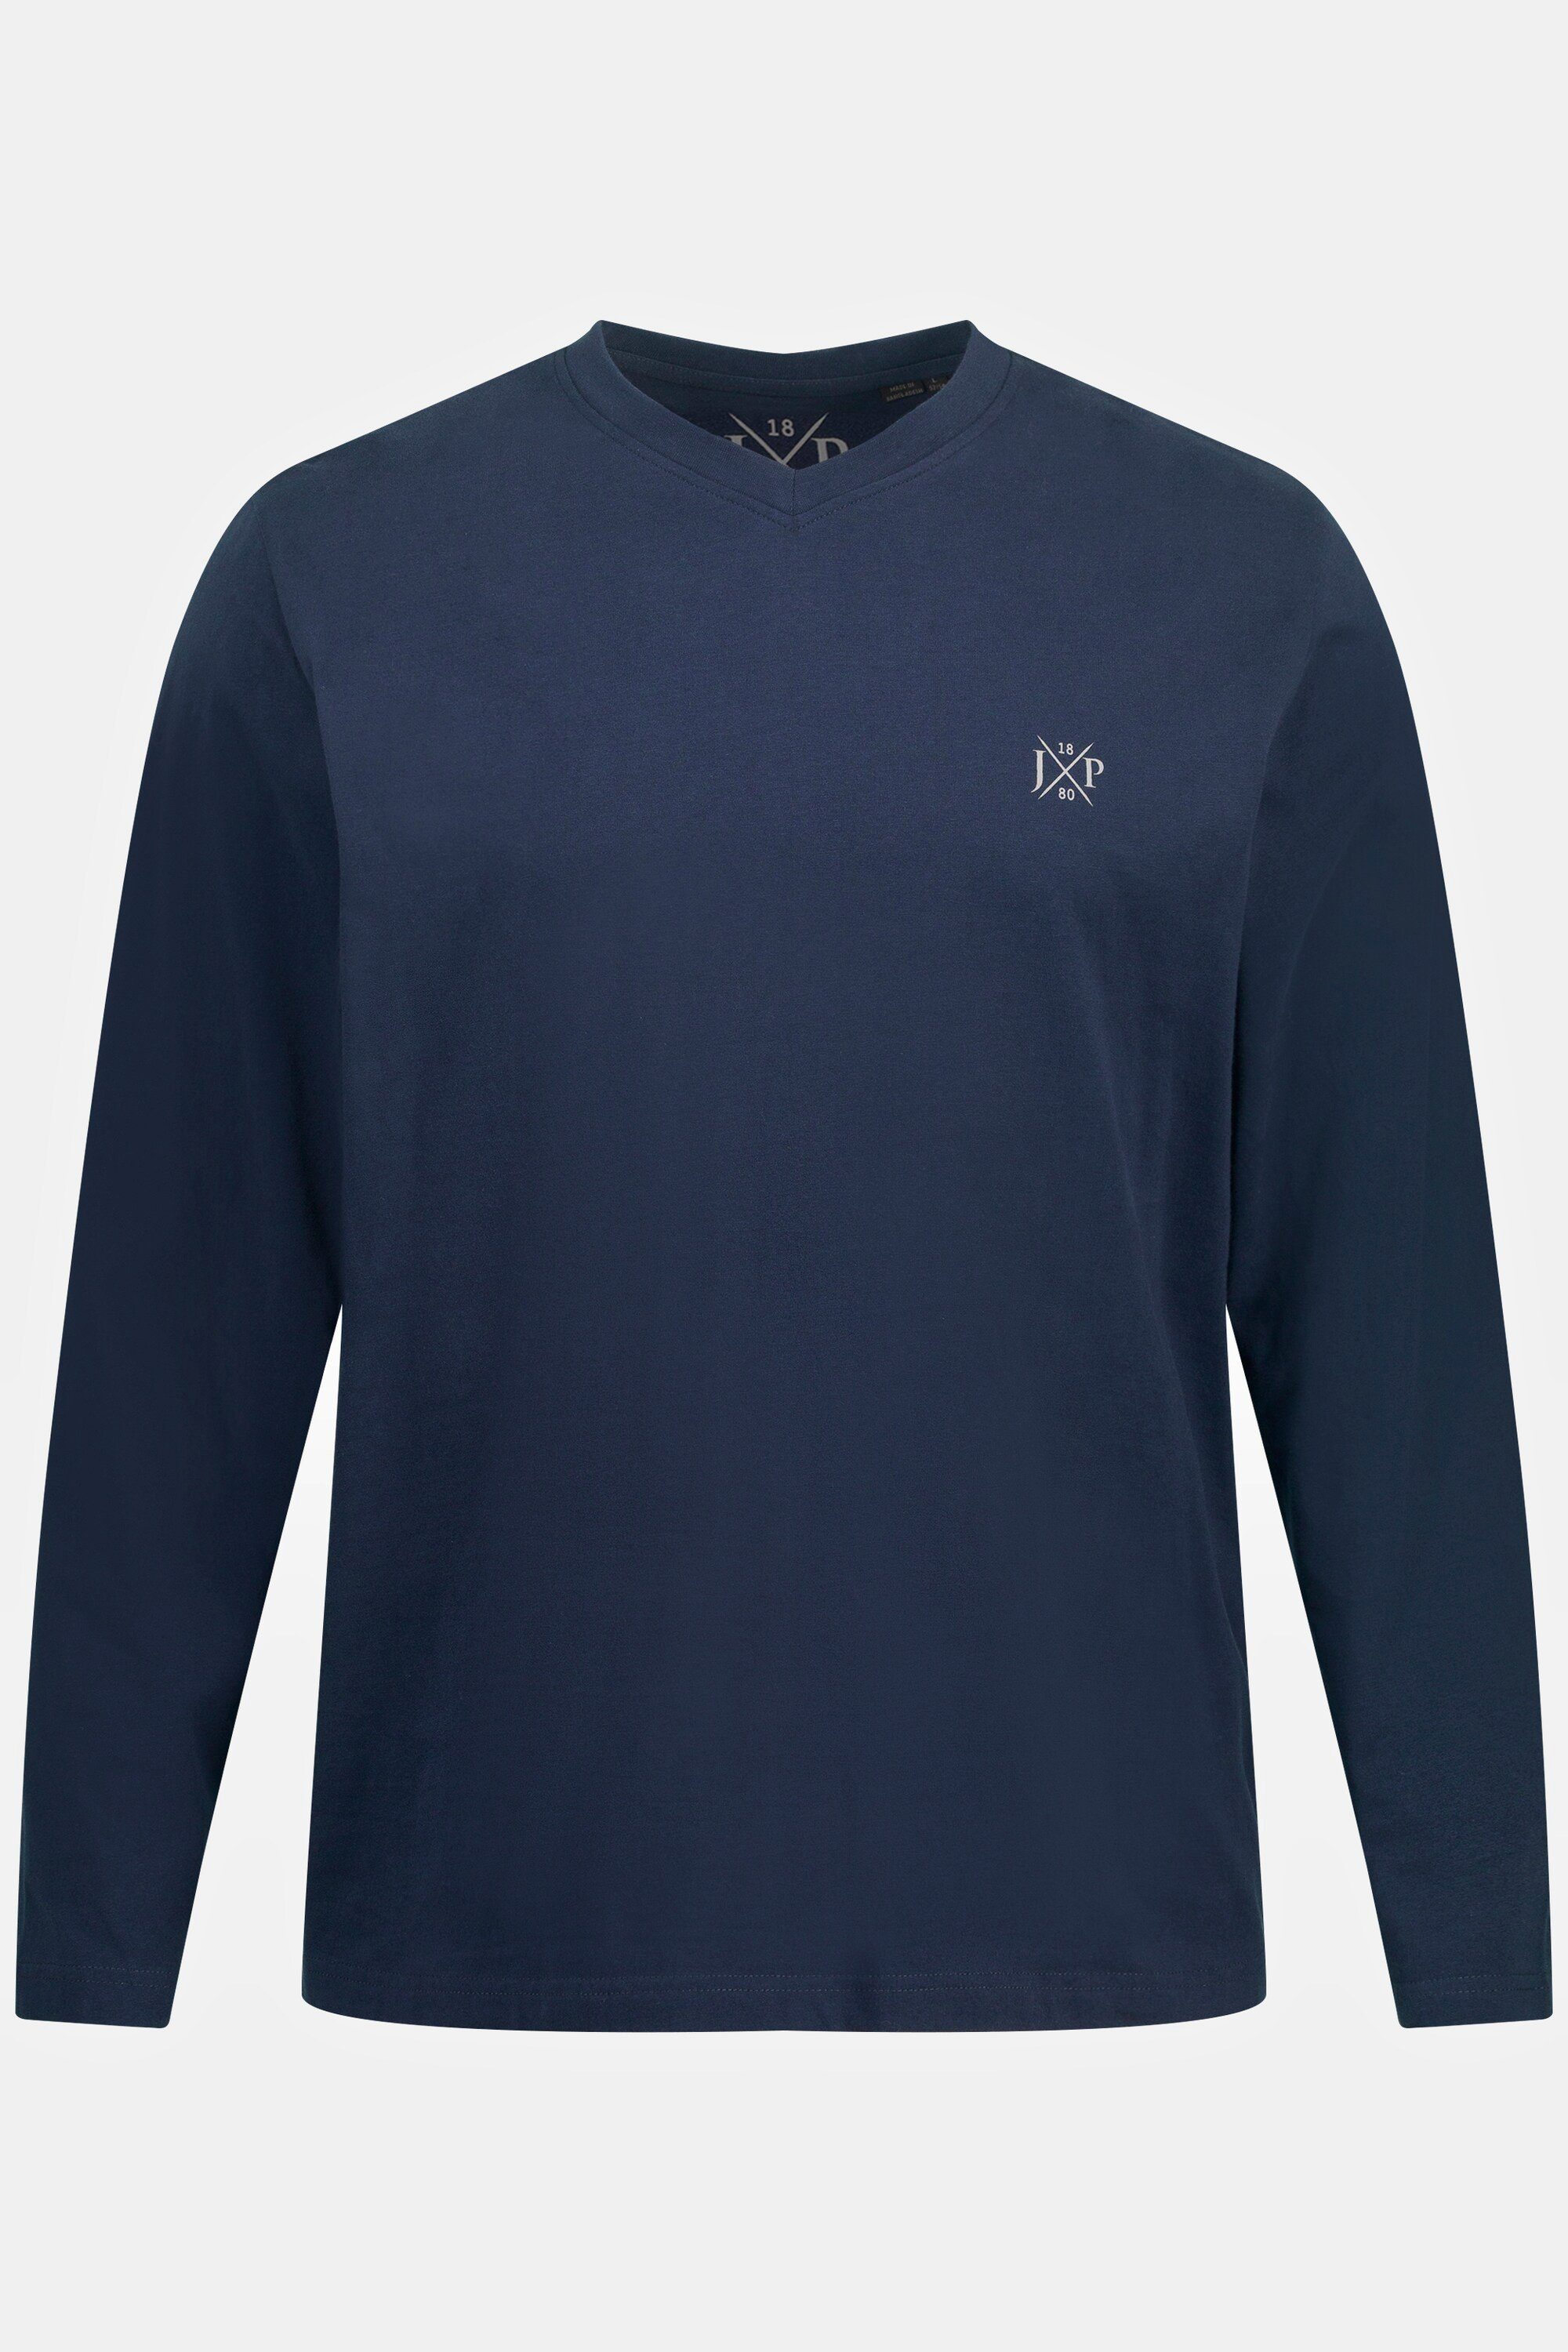 JP1880 T-Shirt Langarmshirt XL navy 8 Langarm V-Ausschnitt Basic bis blau